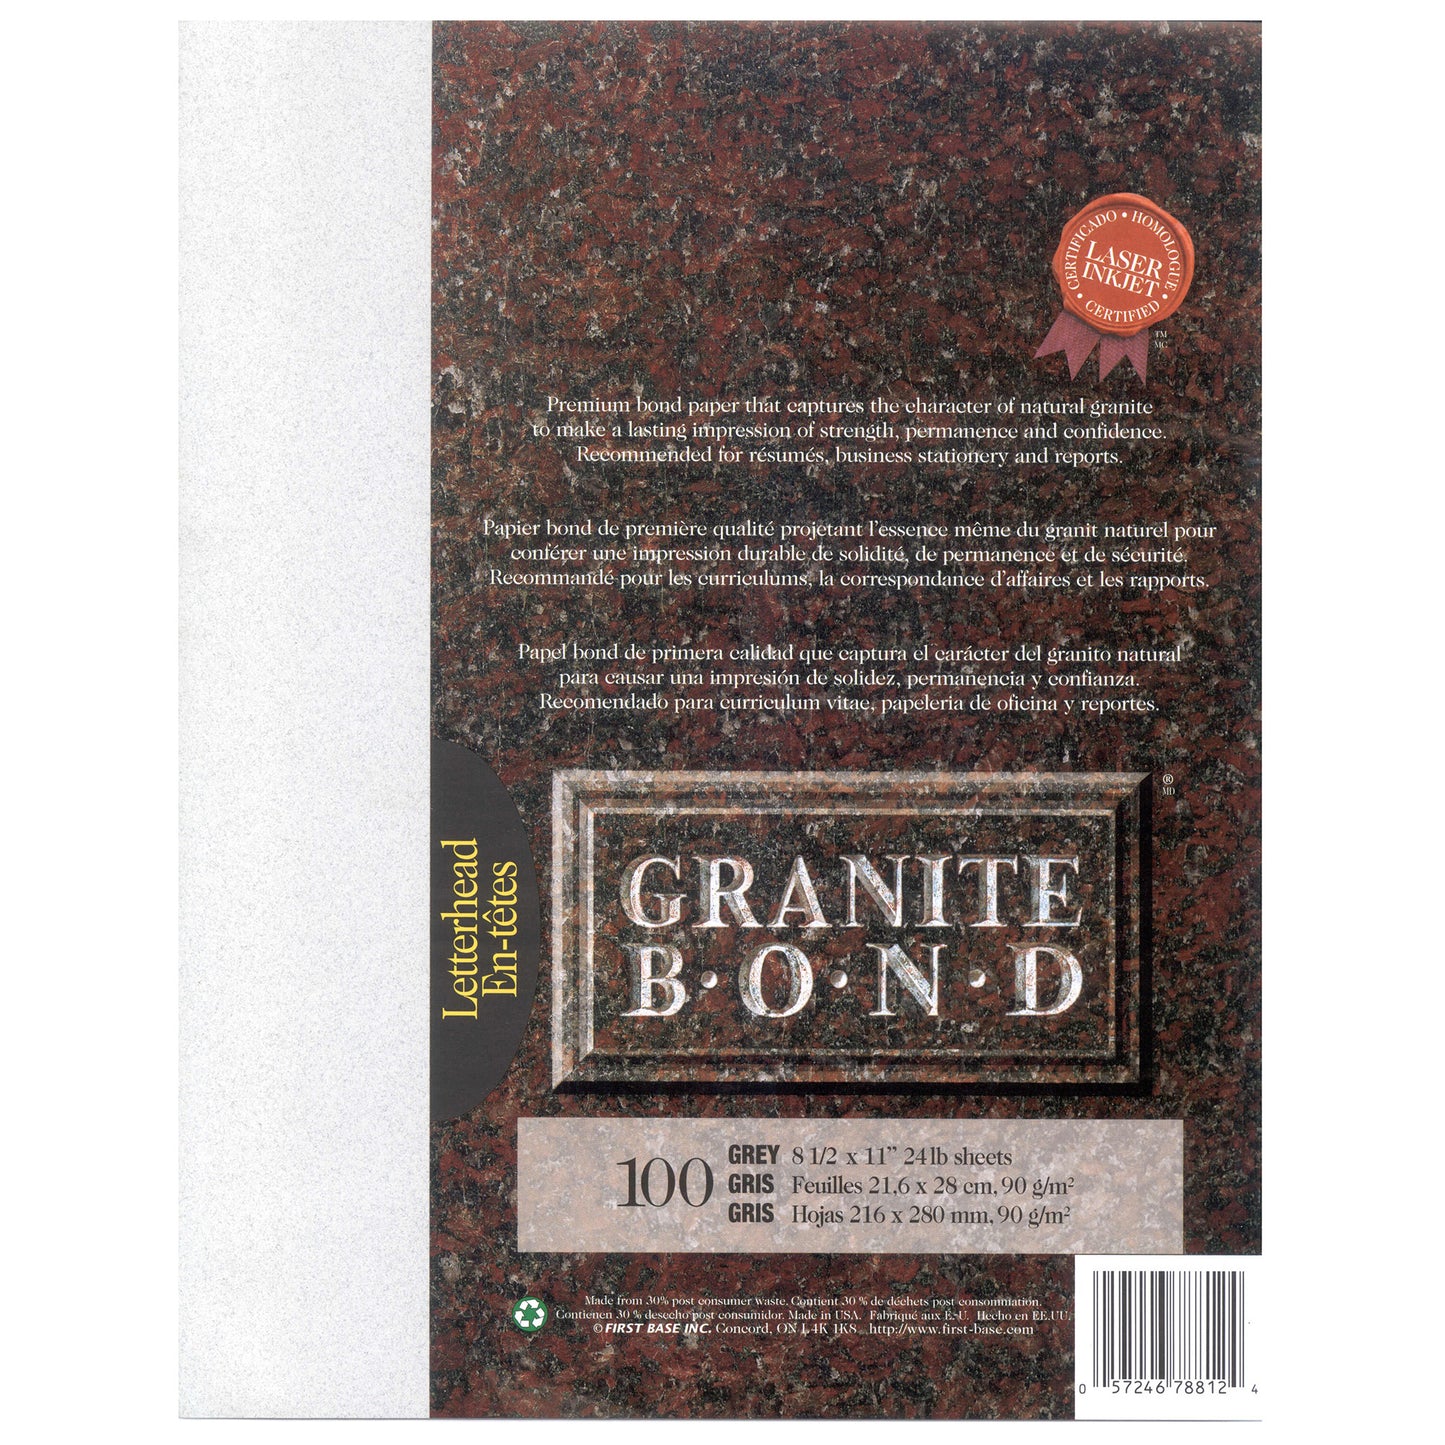 St. James® Granite Bond, 24 lb Letter-Size Paper, Grey, Pack of 100